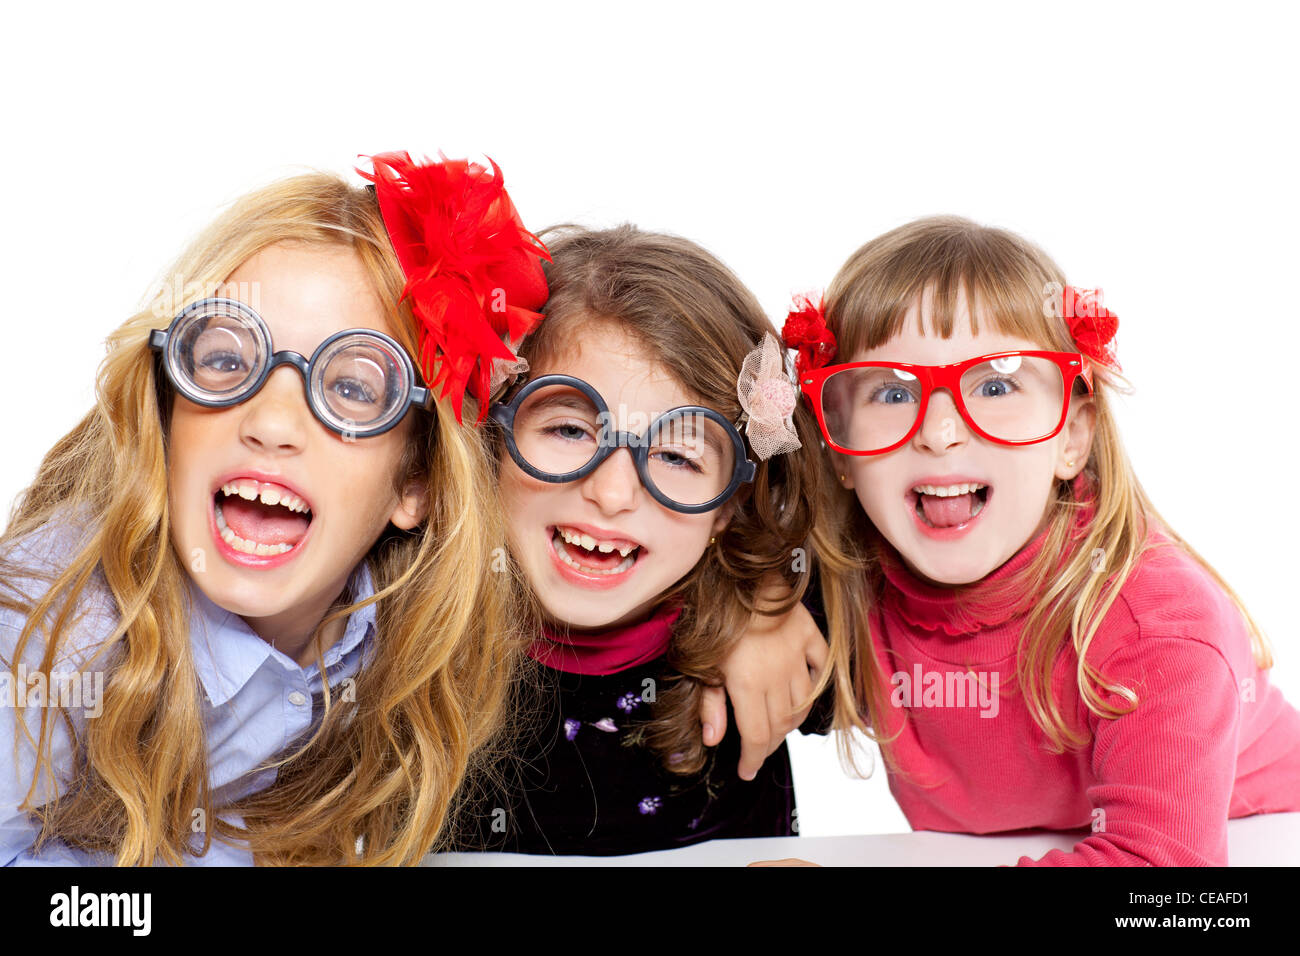 Nerd-Kinder-Girl-Group mit Brille und lustige Ausdruck Stockfotografie -  Alamy